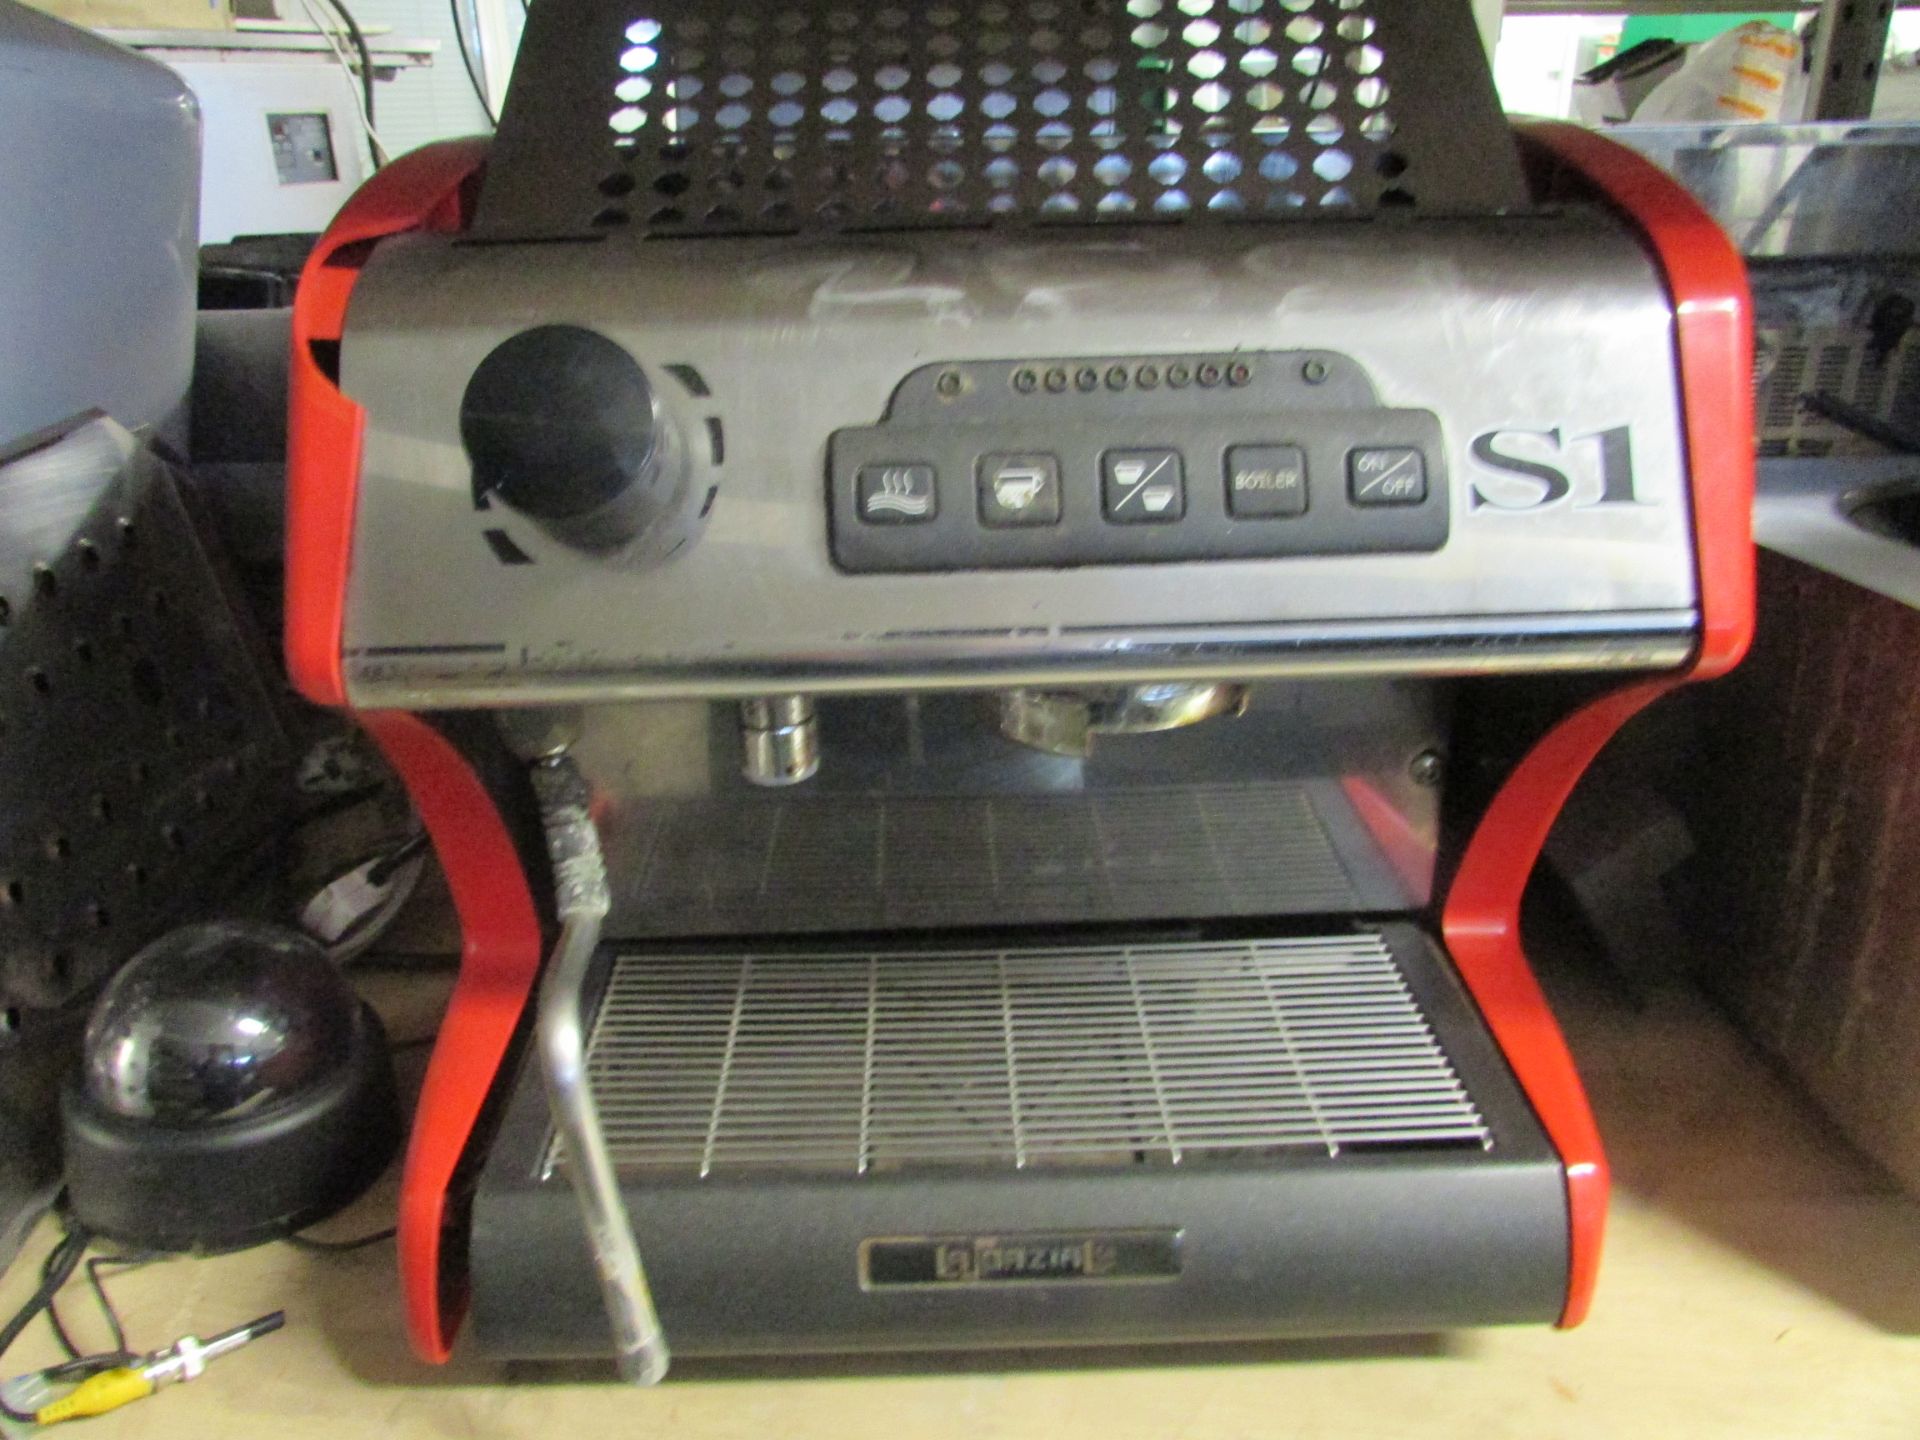 La Spaziali S1 Single Group Coffee Espresso Machine (Untested)